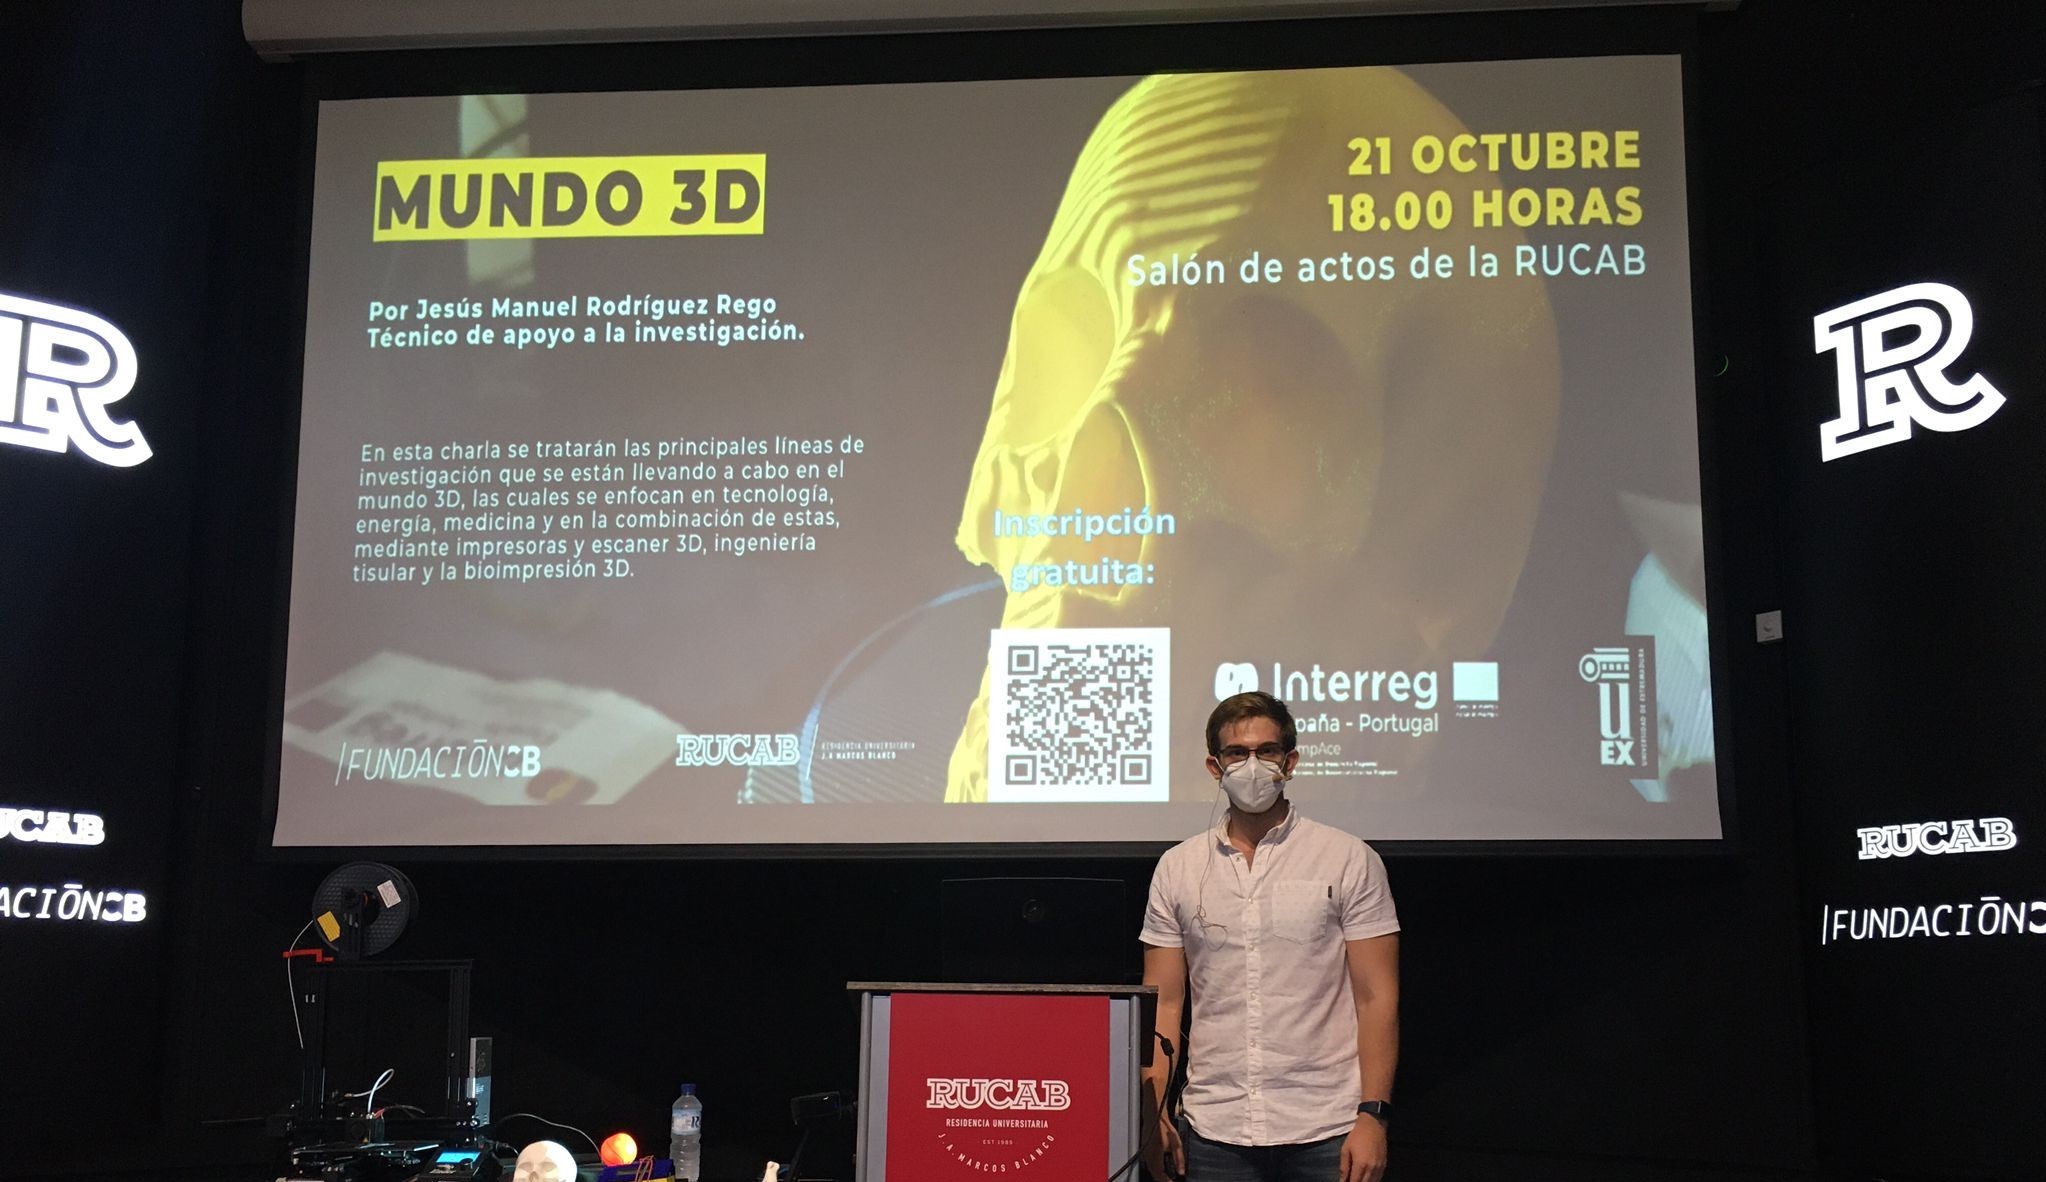 La Universidad de Extremadura realizó una charla en la Residencia Universitaria de Fundación CB (Rucab) de Badajoz sobre “Mundo 3D”